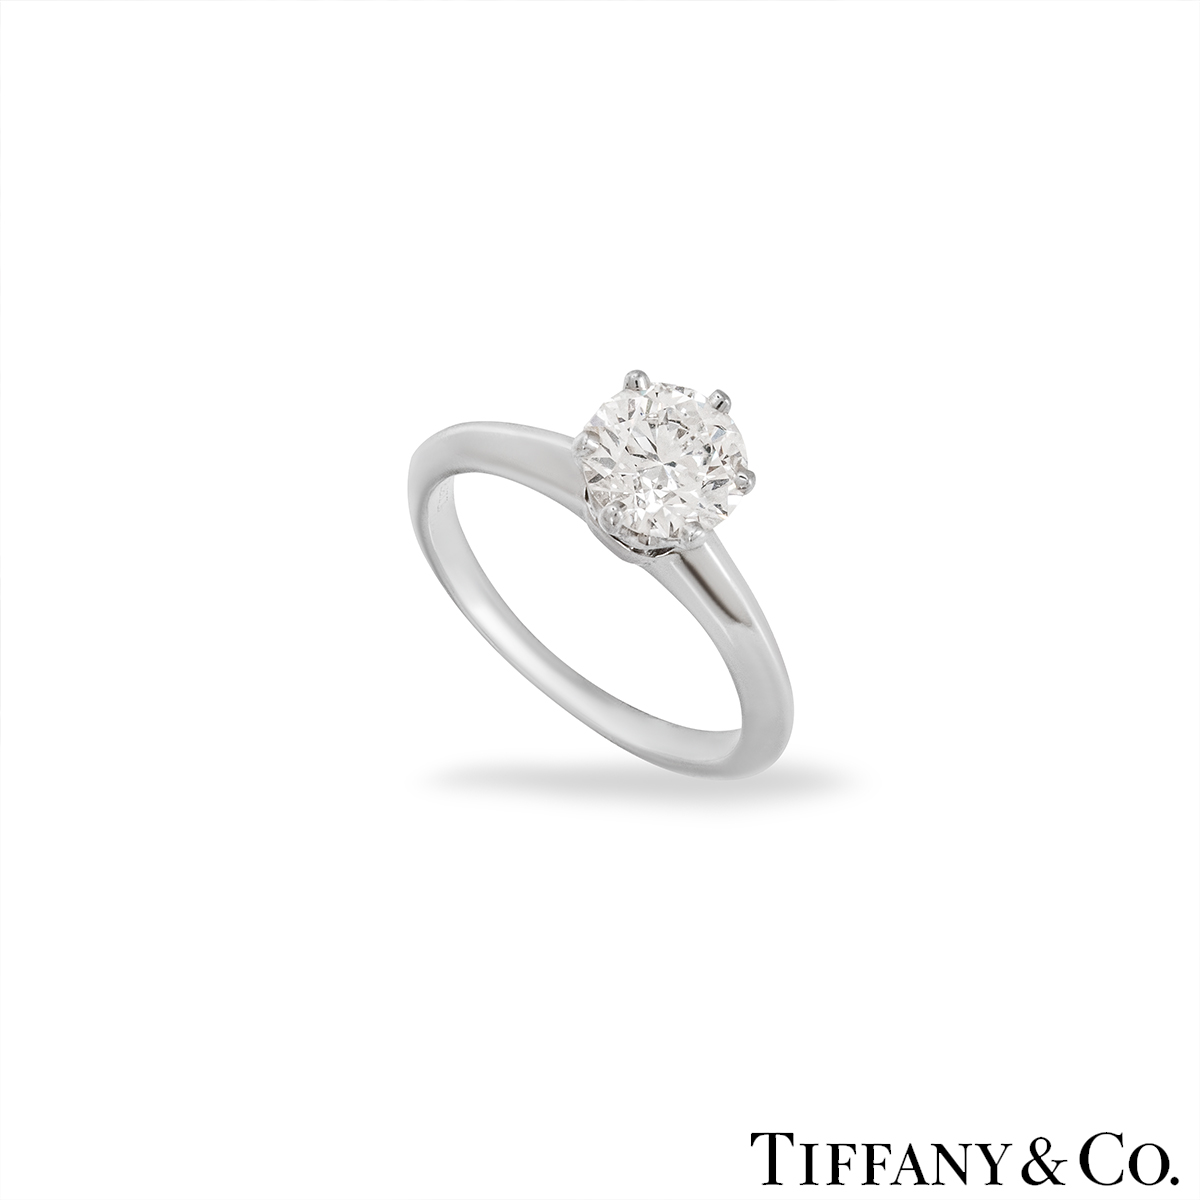 Tiffany & Co. Platinum Diamond Setting Ring 1.01ct E/VS1